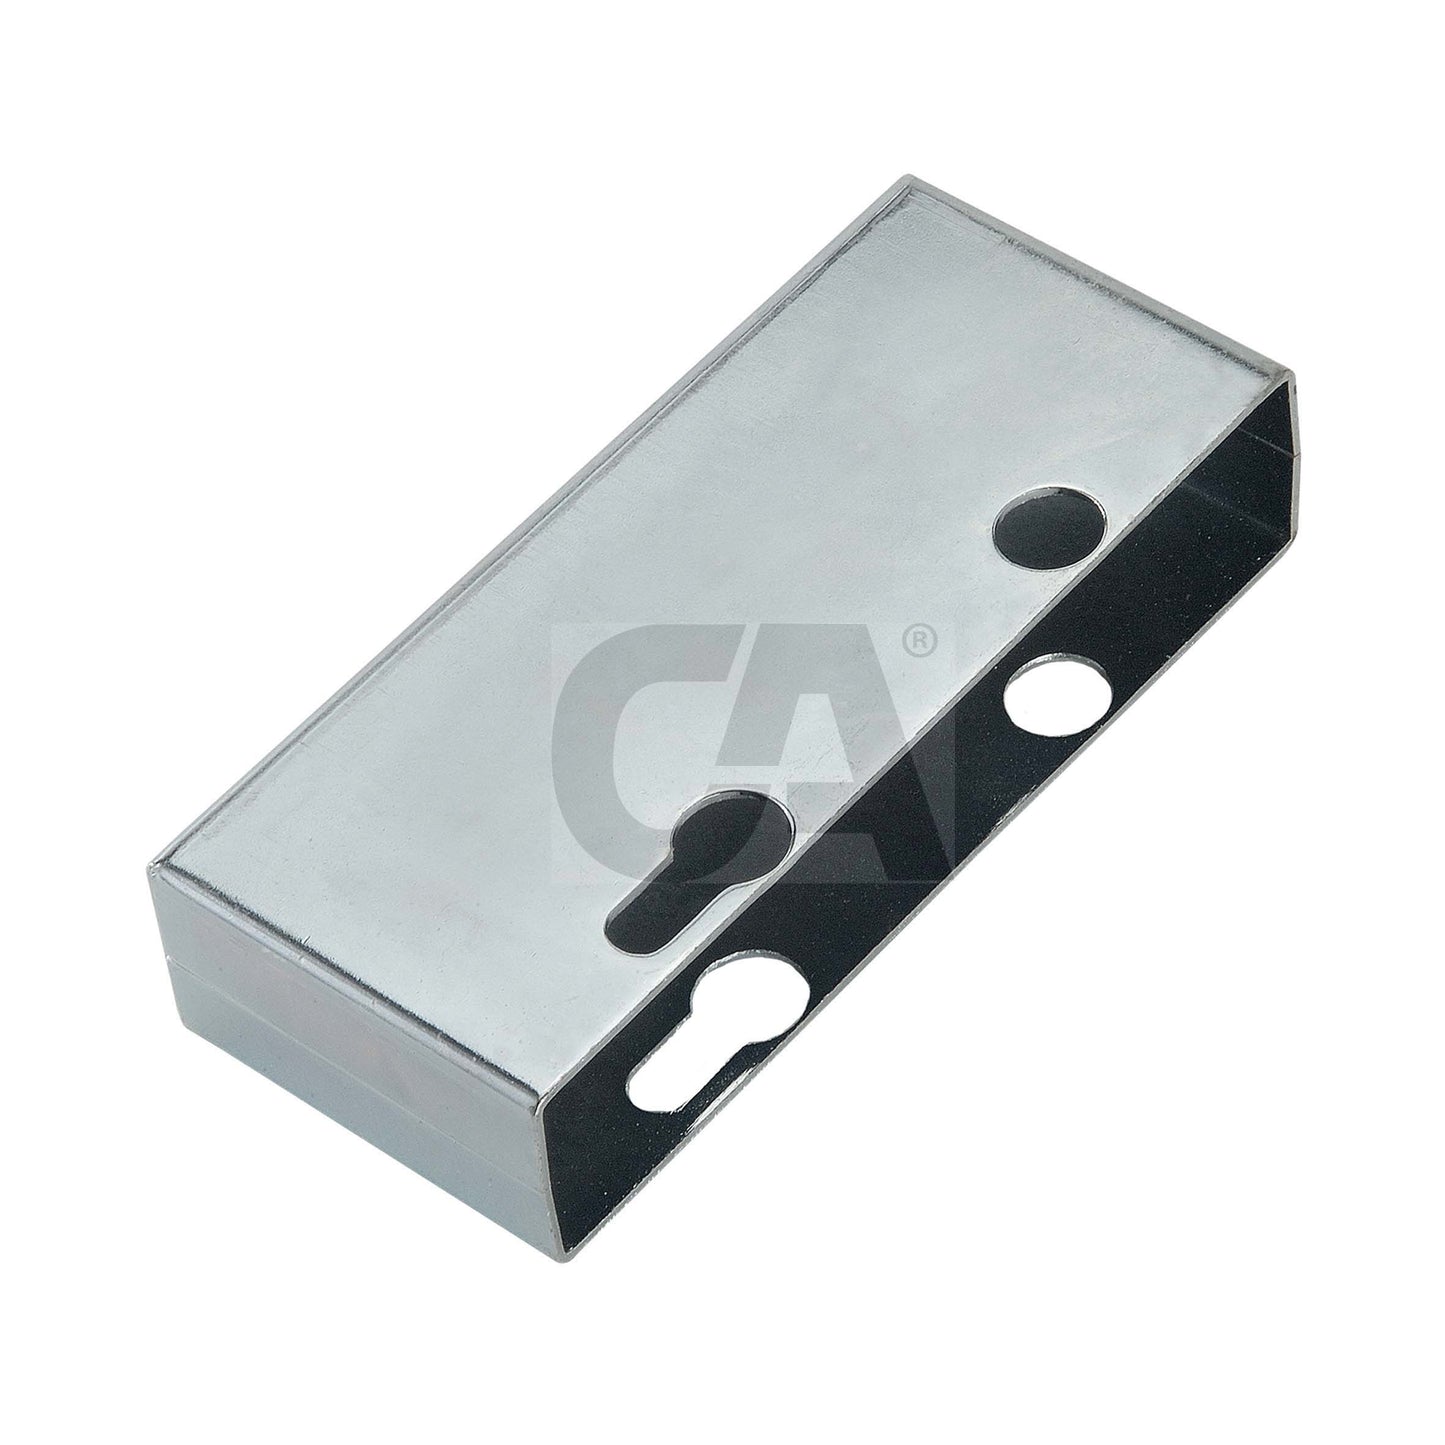 354-Lock Cover Box